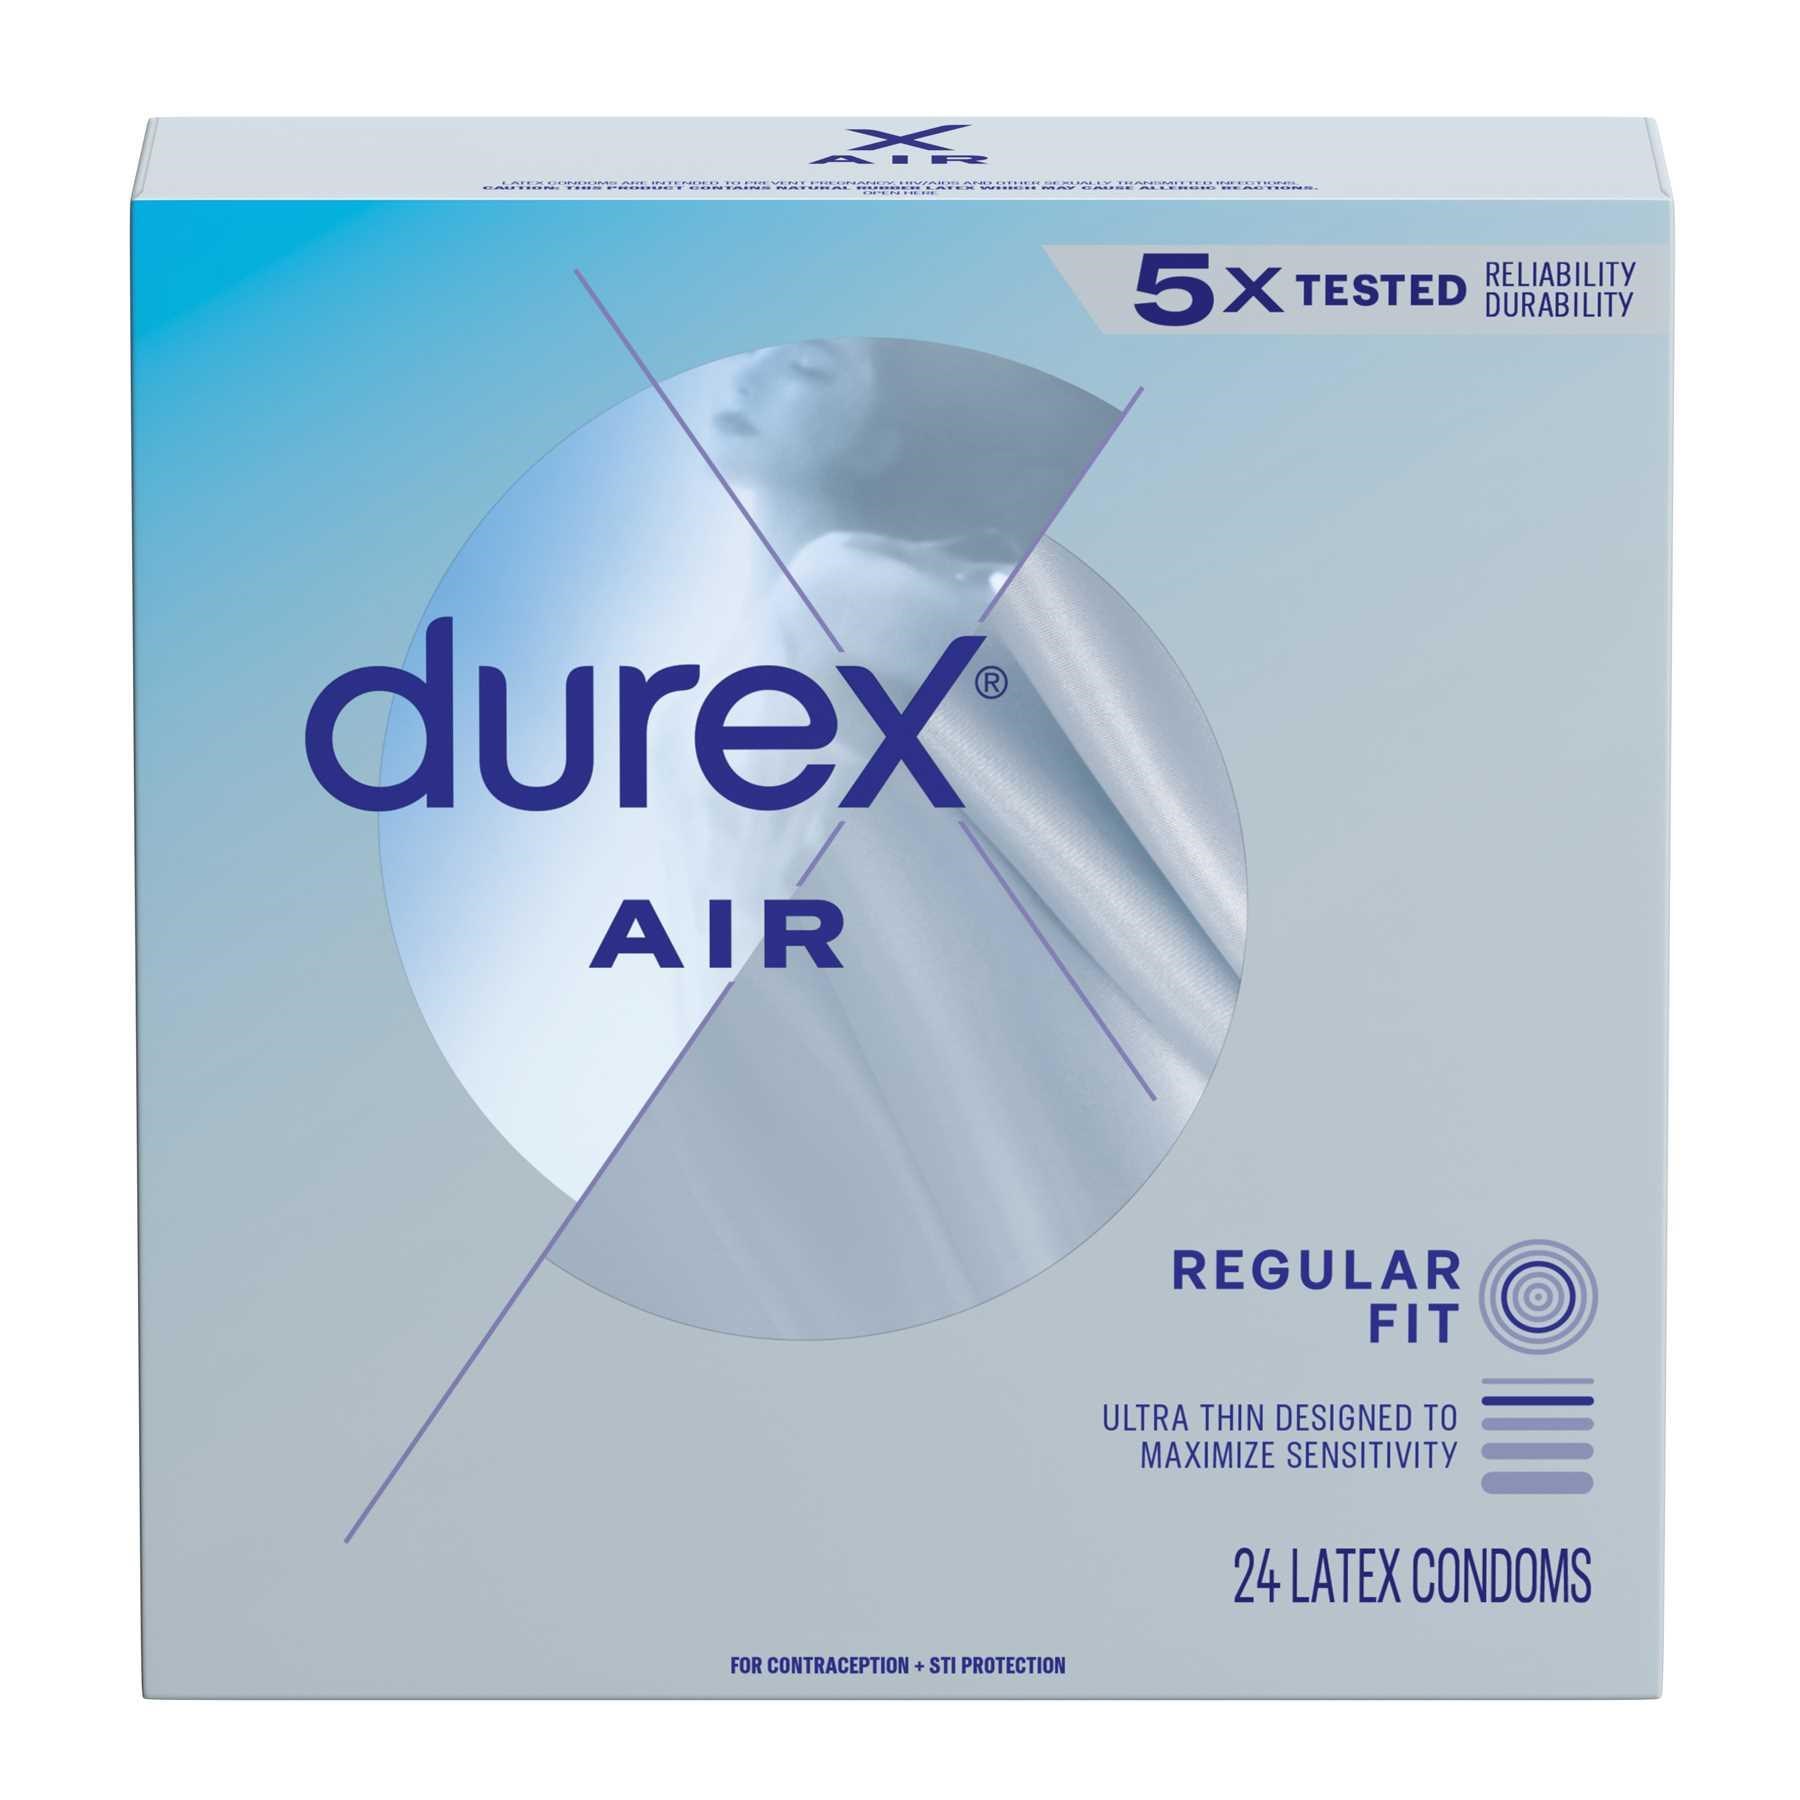 Durex Air Condoms - 24 count box